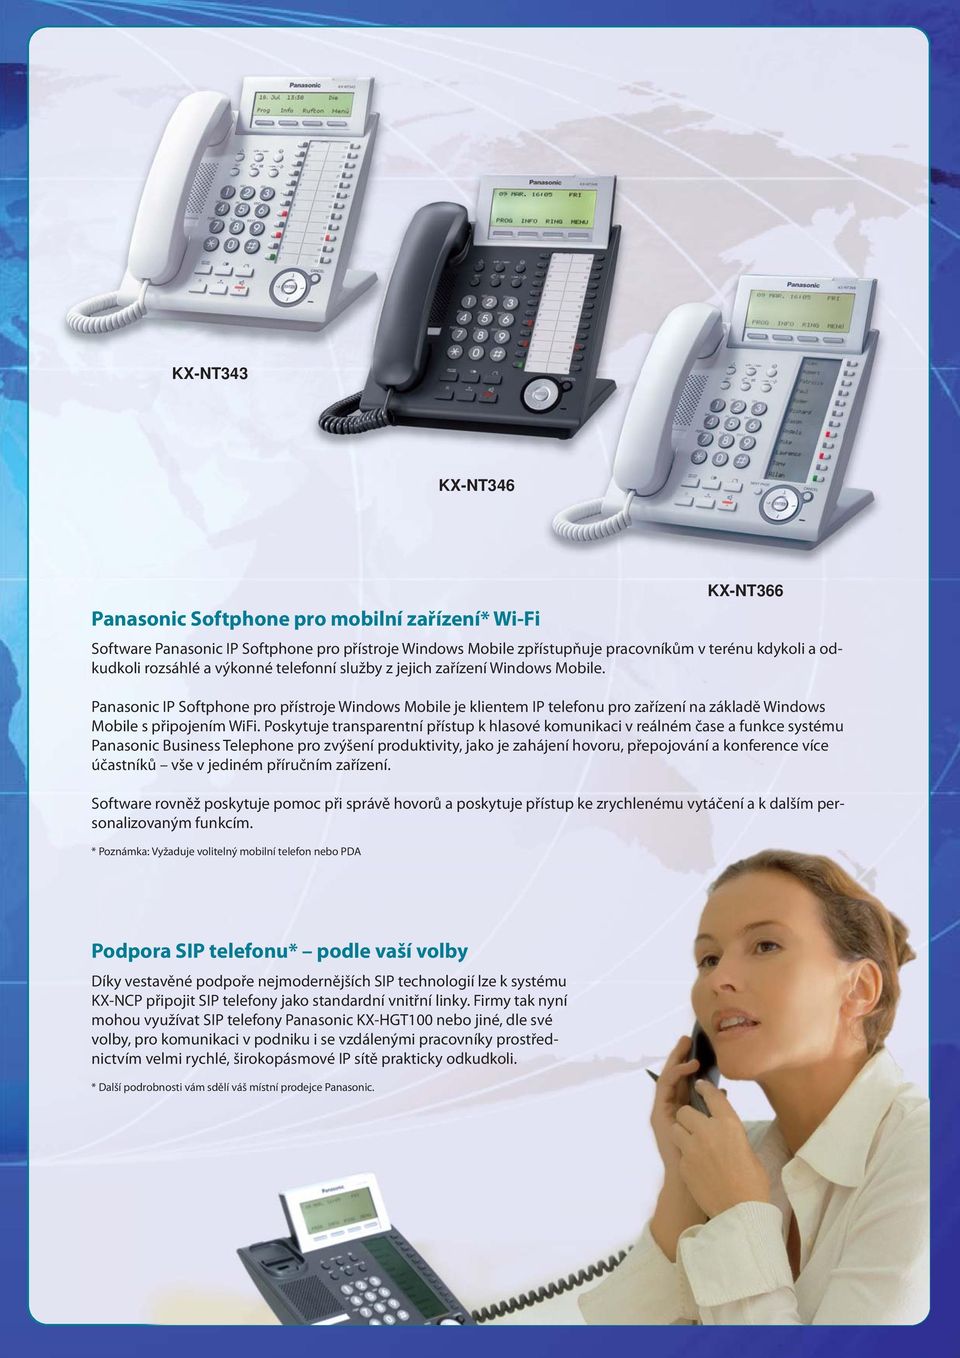 Poskytuje transparentní přístup k hlasové komunikaci v reálném čase a funkce systému Panasonic Business Telephone pro zvýšení produktivity, jako je zahájení hovoru, přepojování a konference více